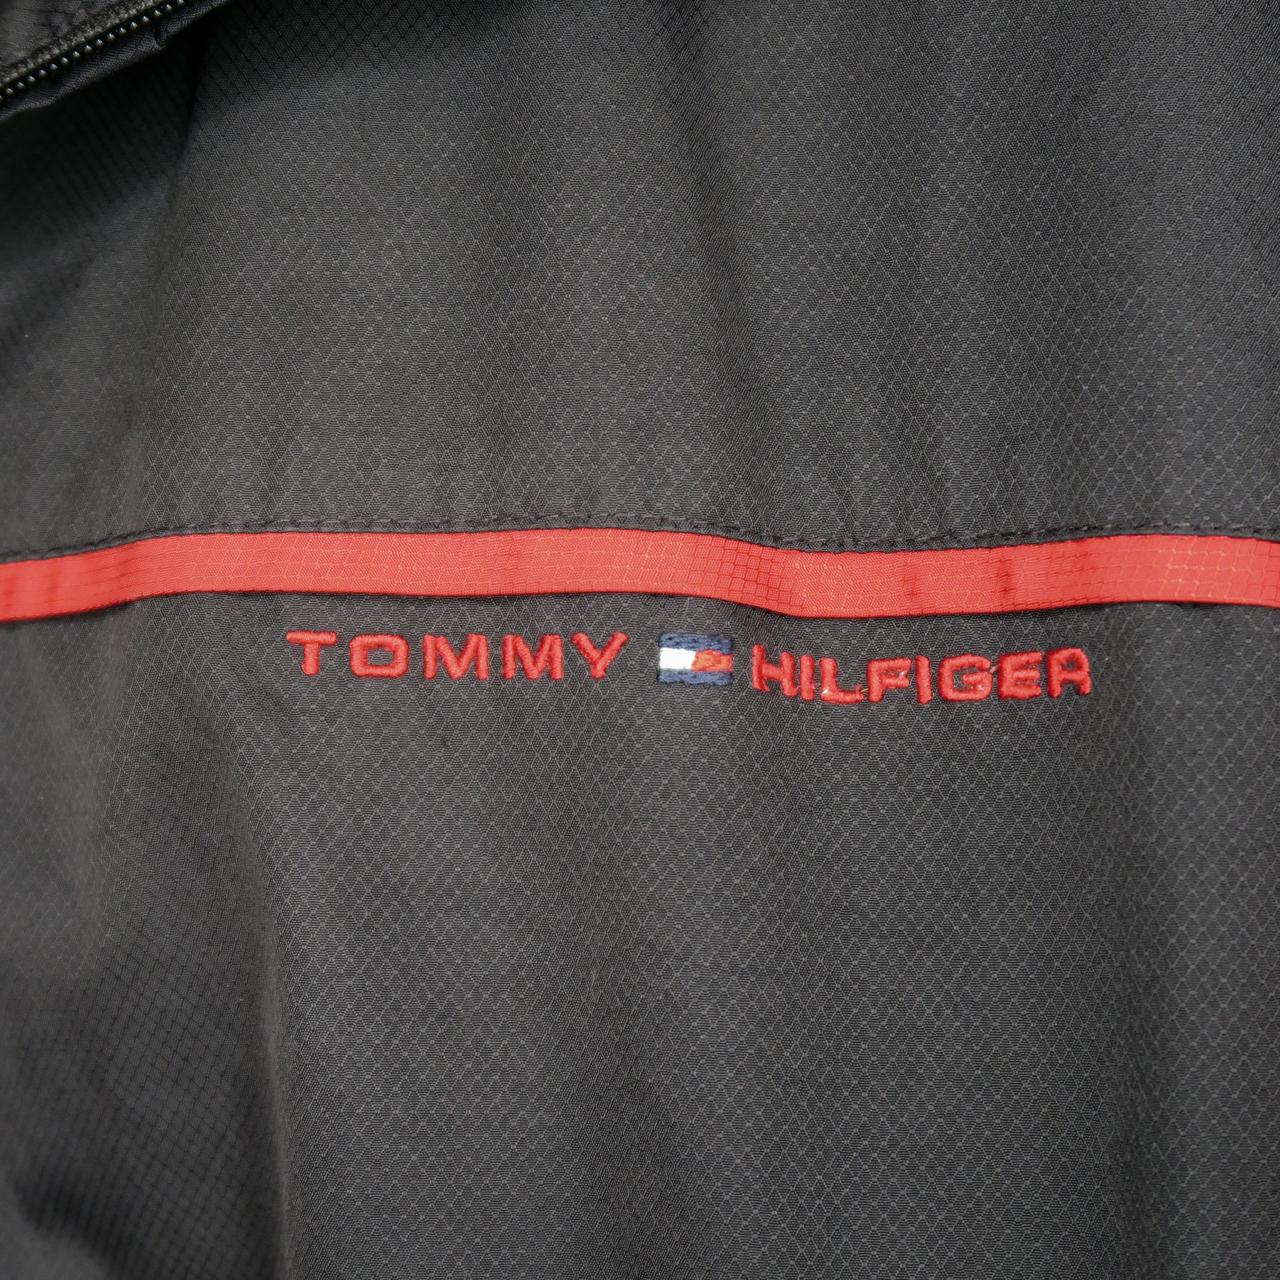 Tommy Hilfiger Men's Black and Red Jacket | Depop